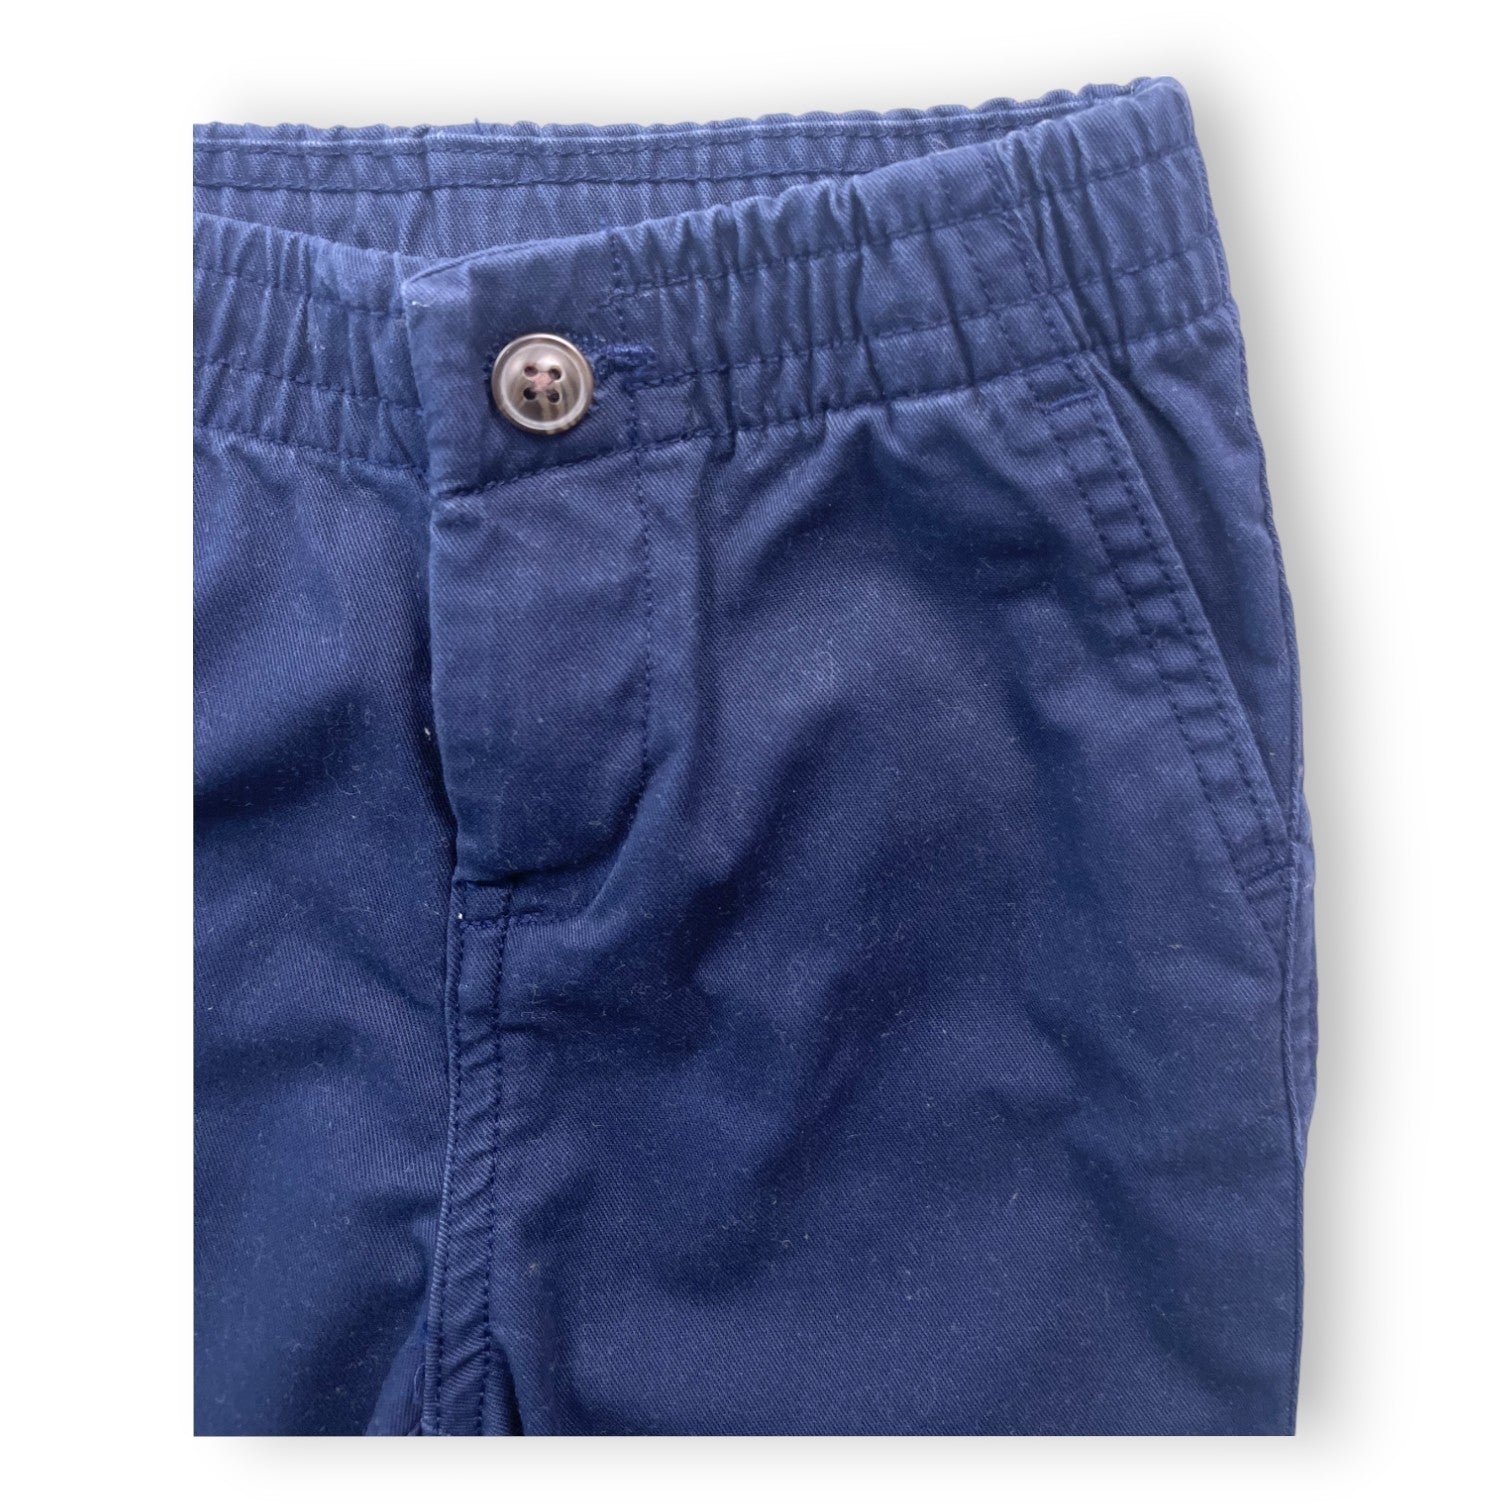 RALPH ALUREN - Pantalon bleu marine droit - 9 mois